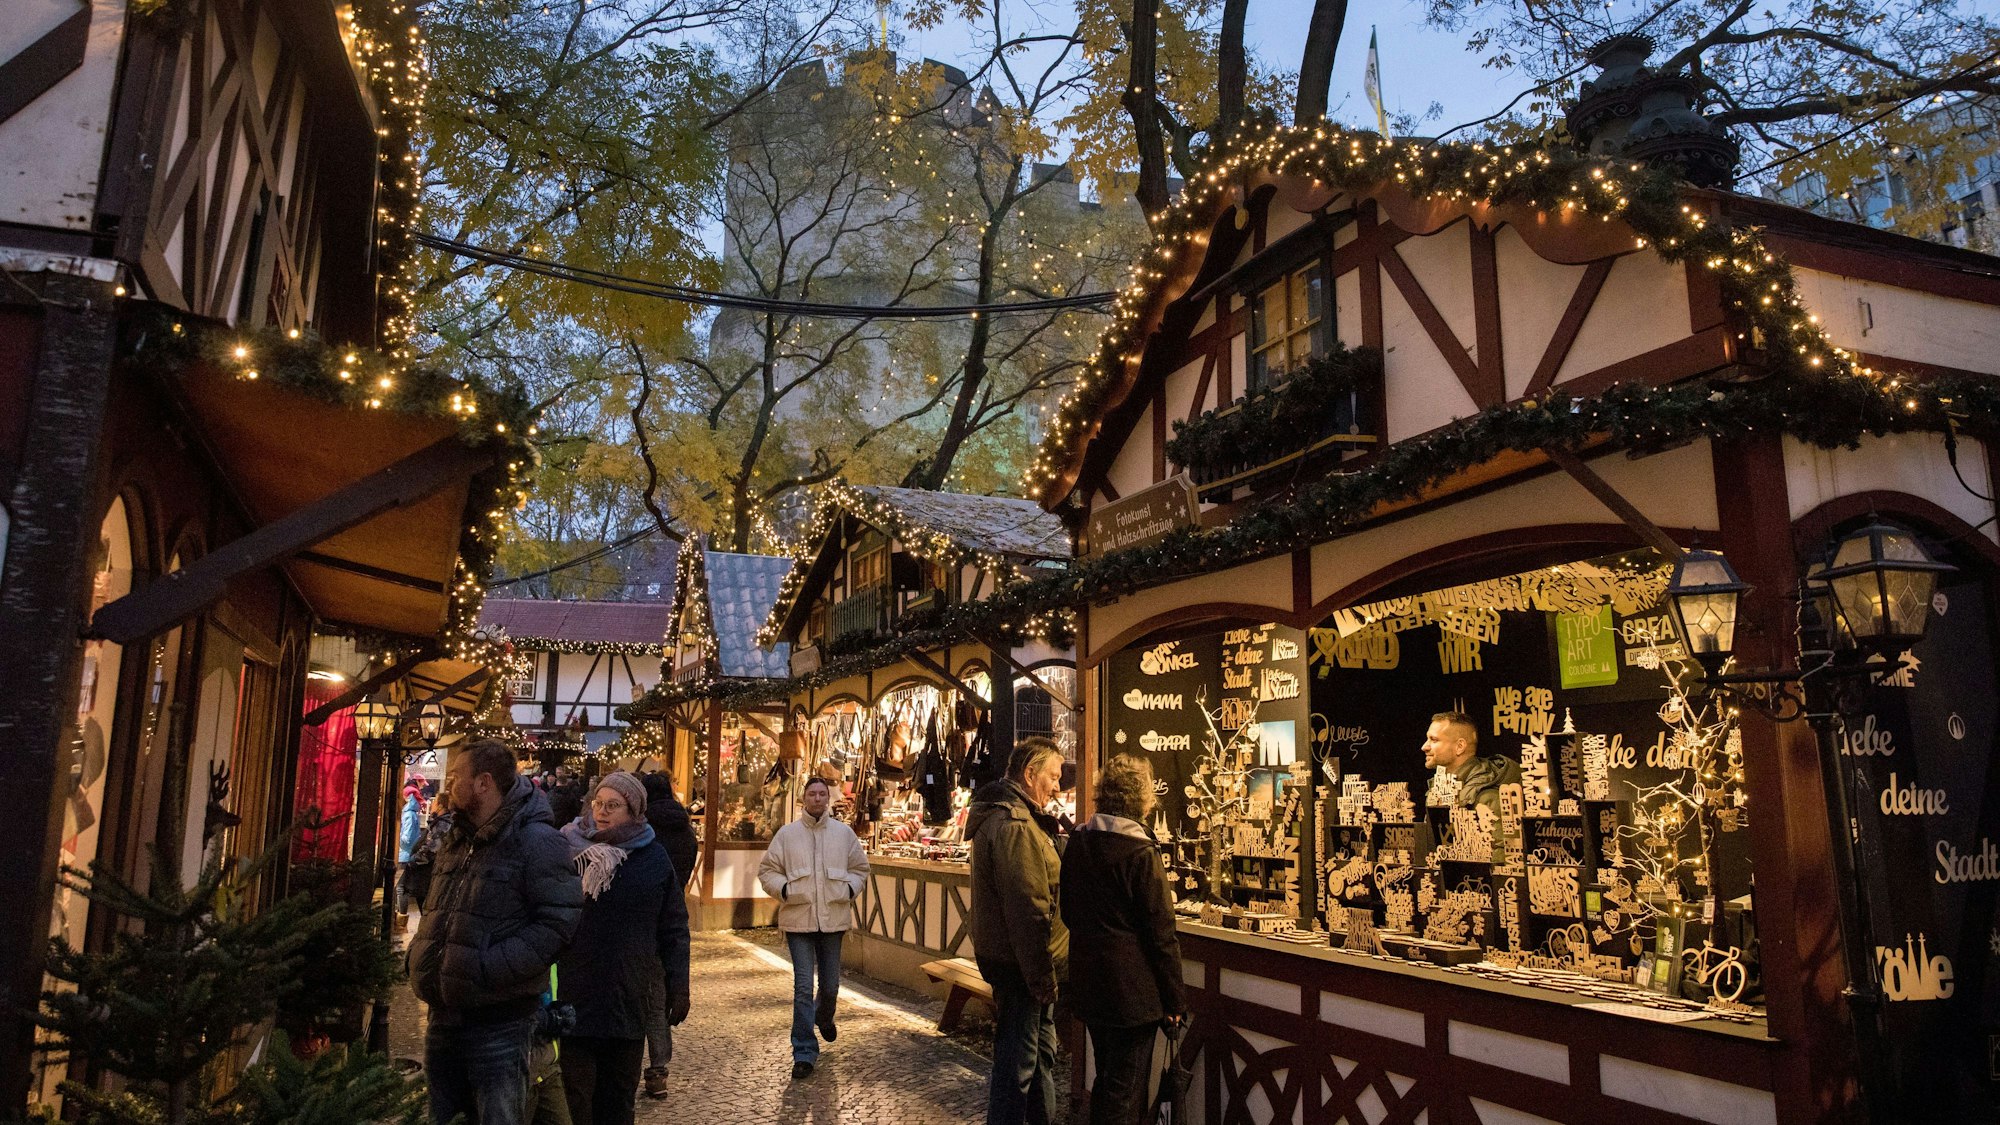 Buden auf dem Weihnachtsmarkt auf dem Rudolfplatz